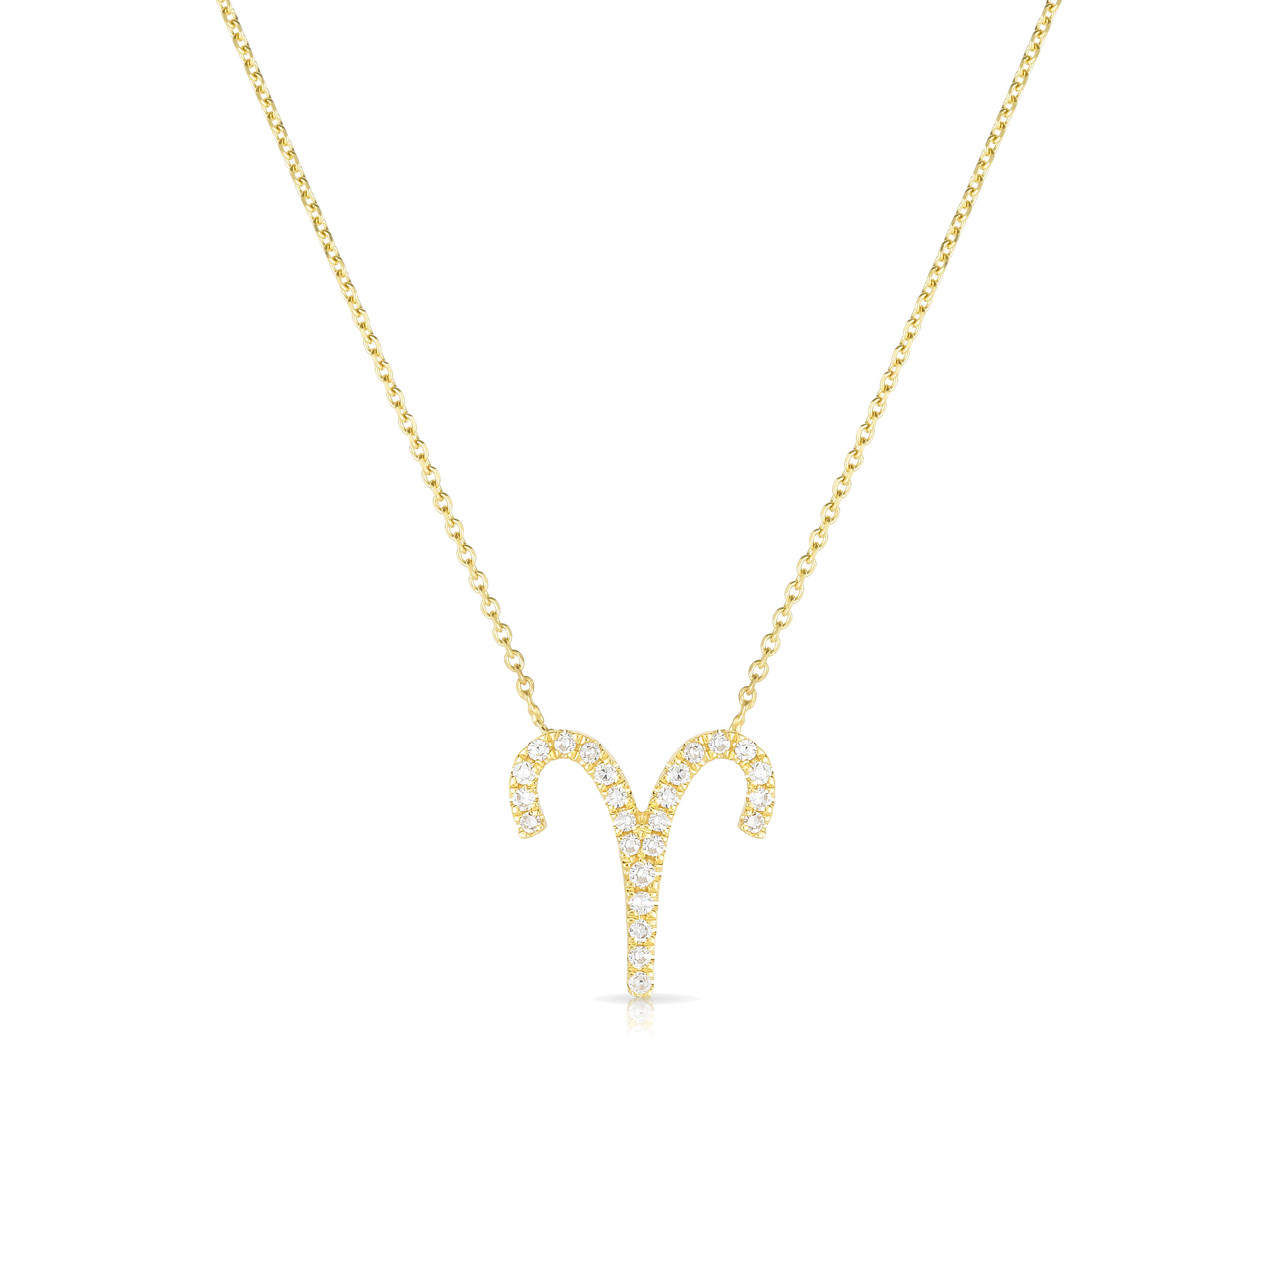 Aries Necklace Sign - Fine Diamond URBAETIS Jewelry Zodiac